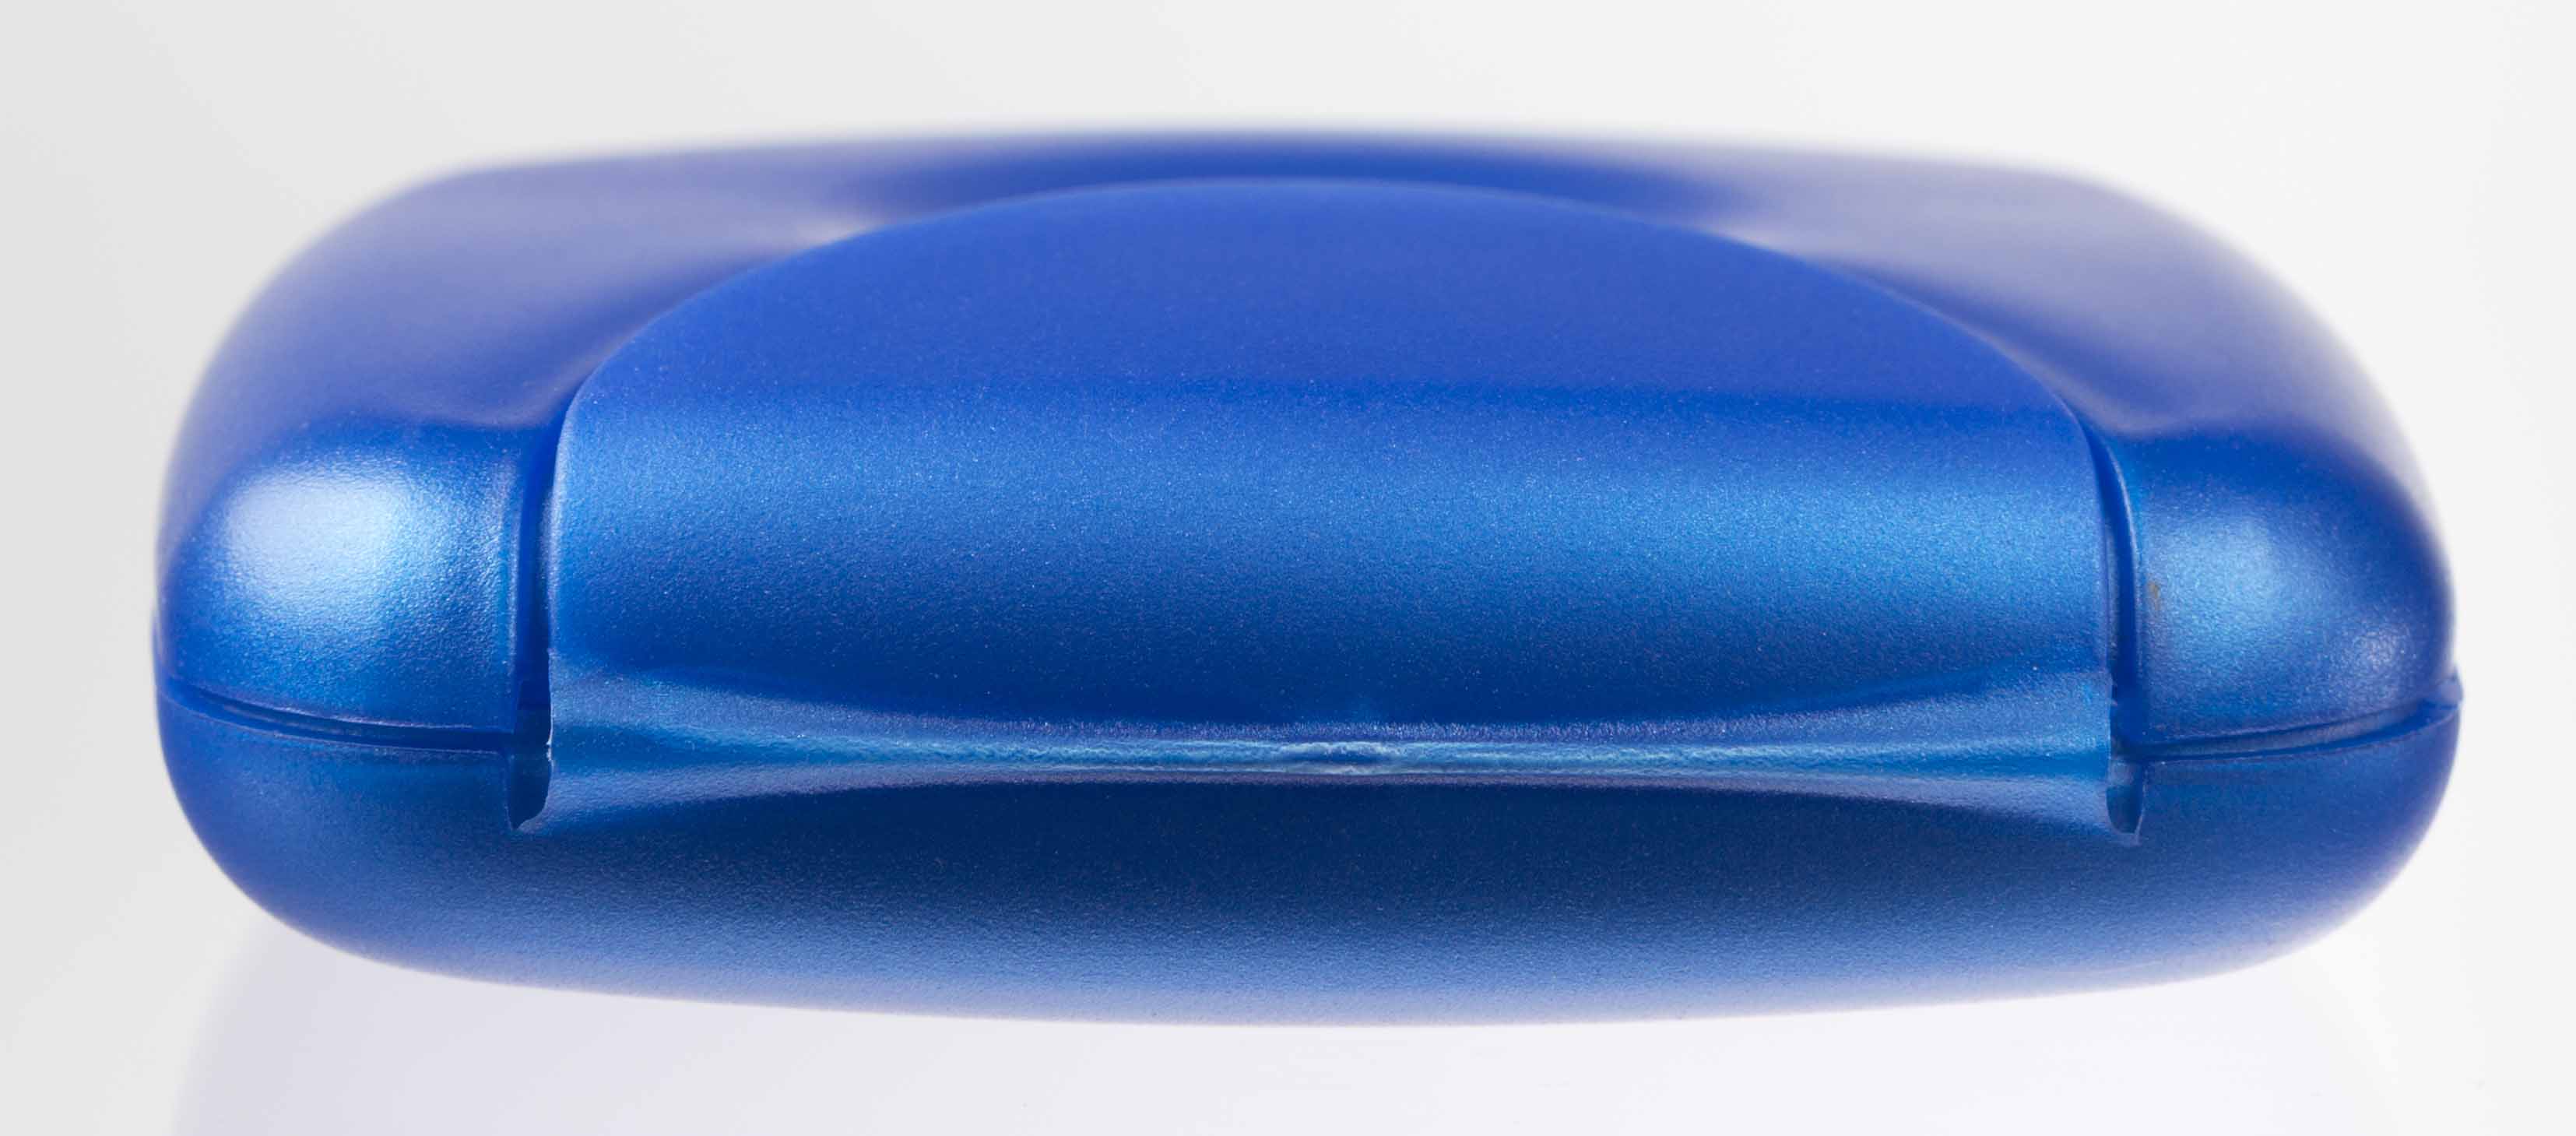 Radius Tampon Condom Case (Assorted Colors) – Smallflower